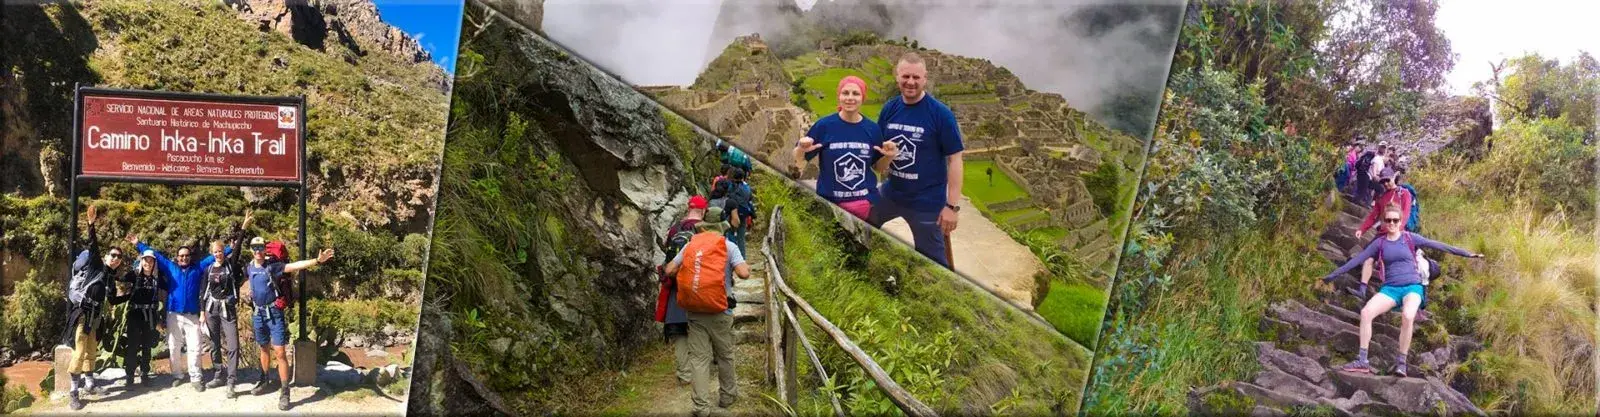 Inca Trail to Machu Picchu Cusco 5 Days and 4 Nights - Local Trekkers Peru - Local Trekkers Peru